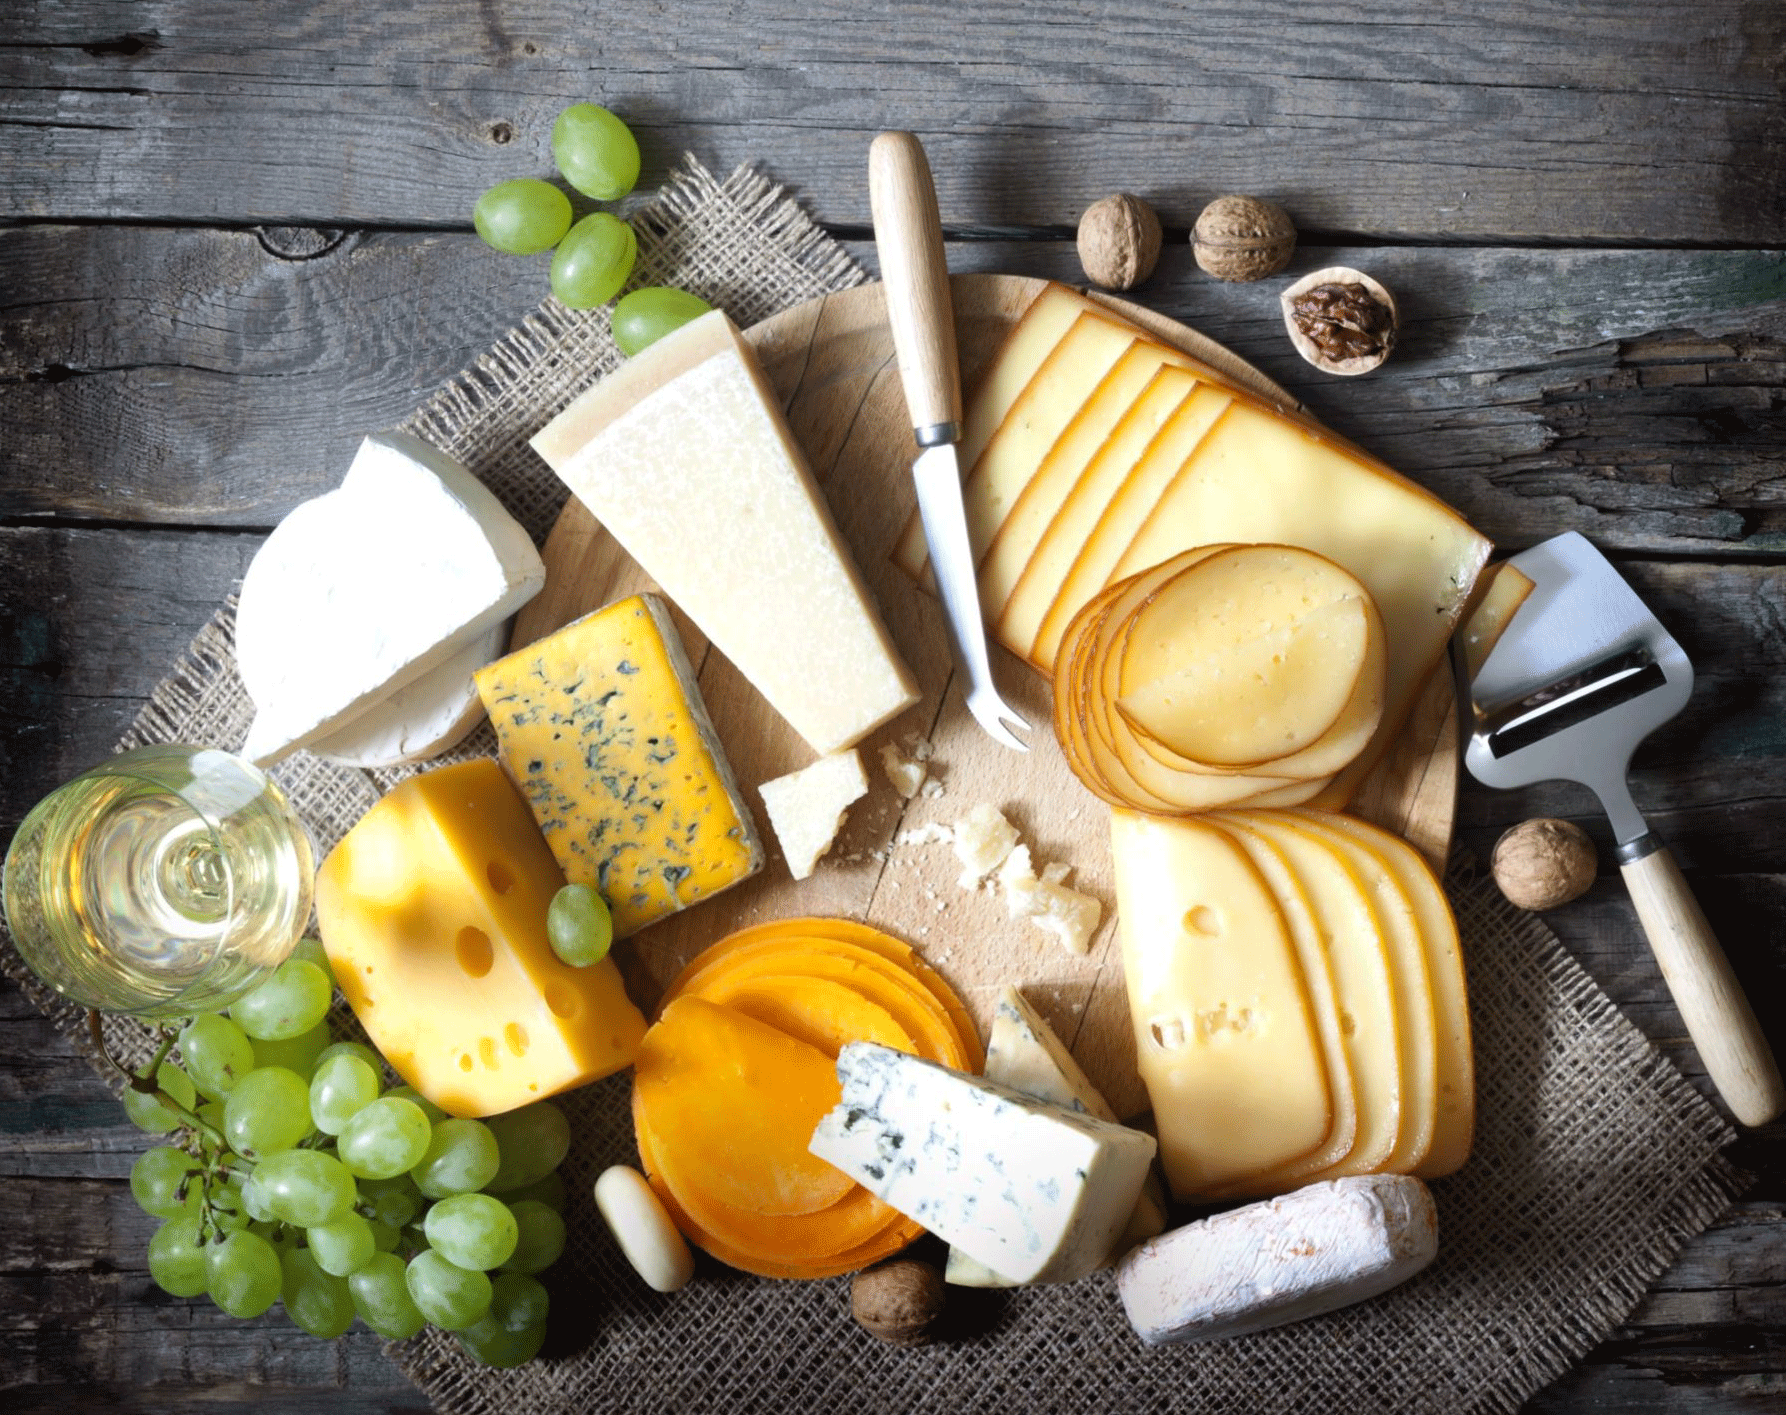 Servir le fromage - Fromager Pornichet La Baule